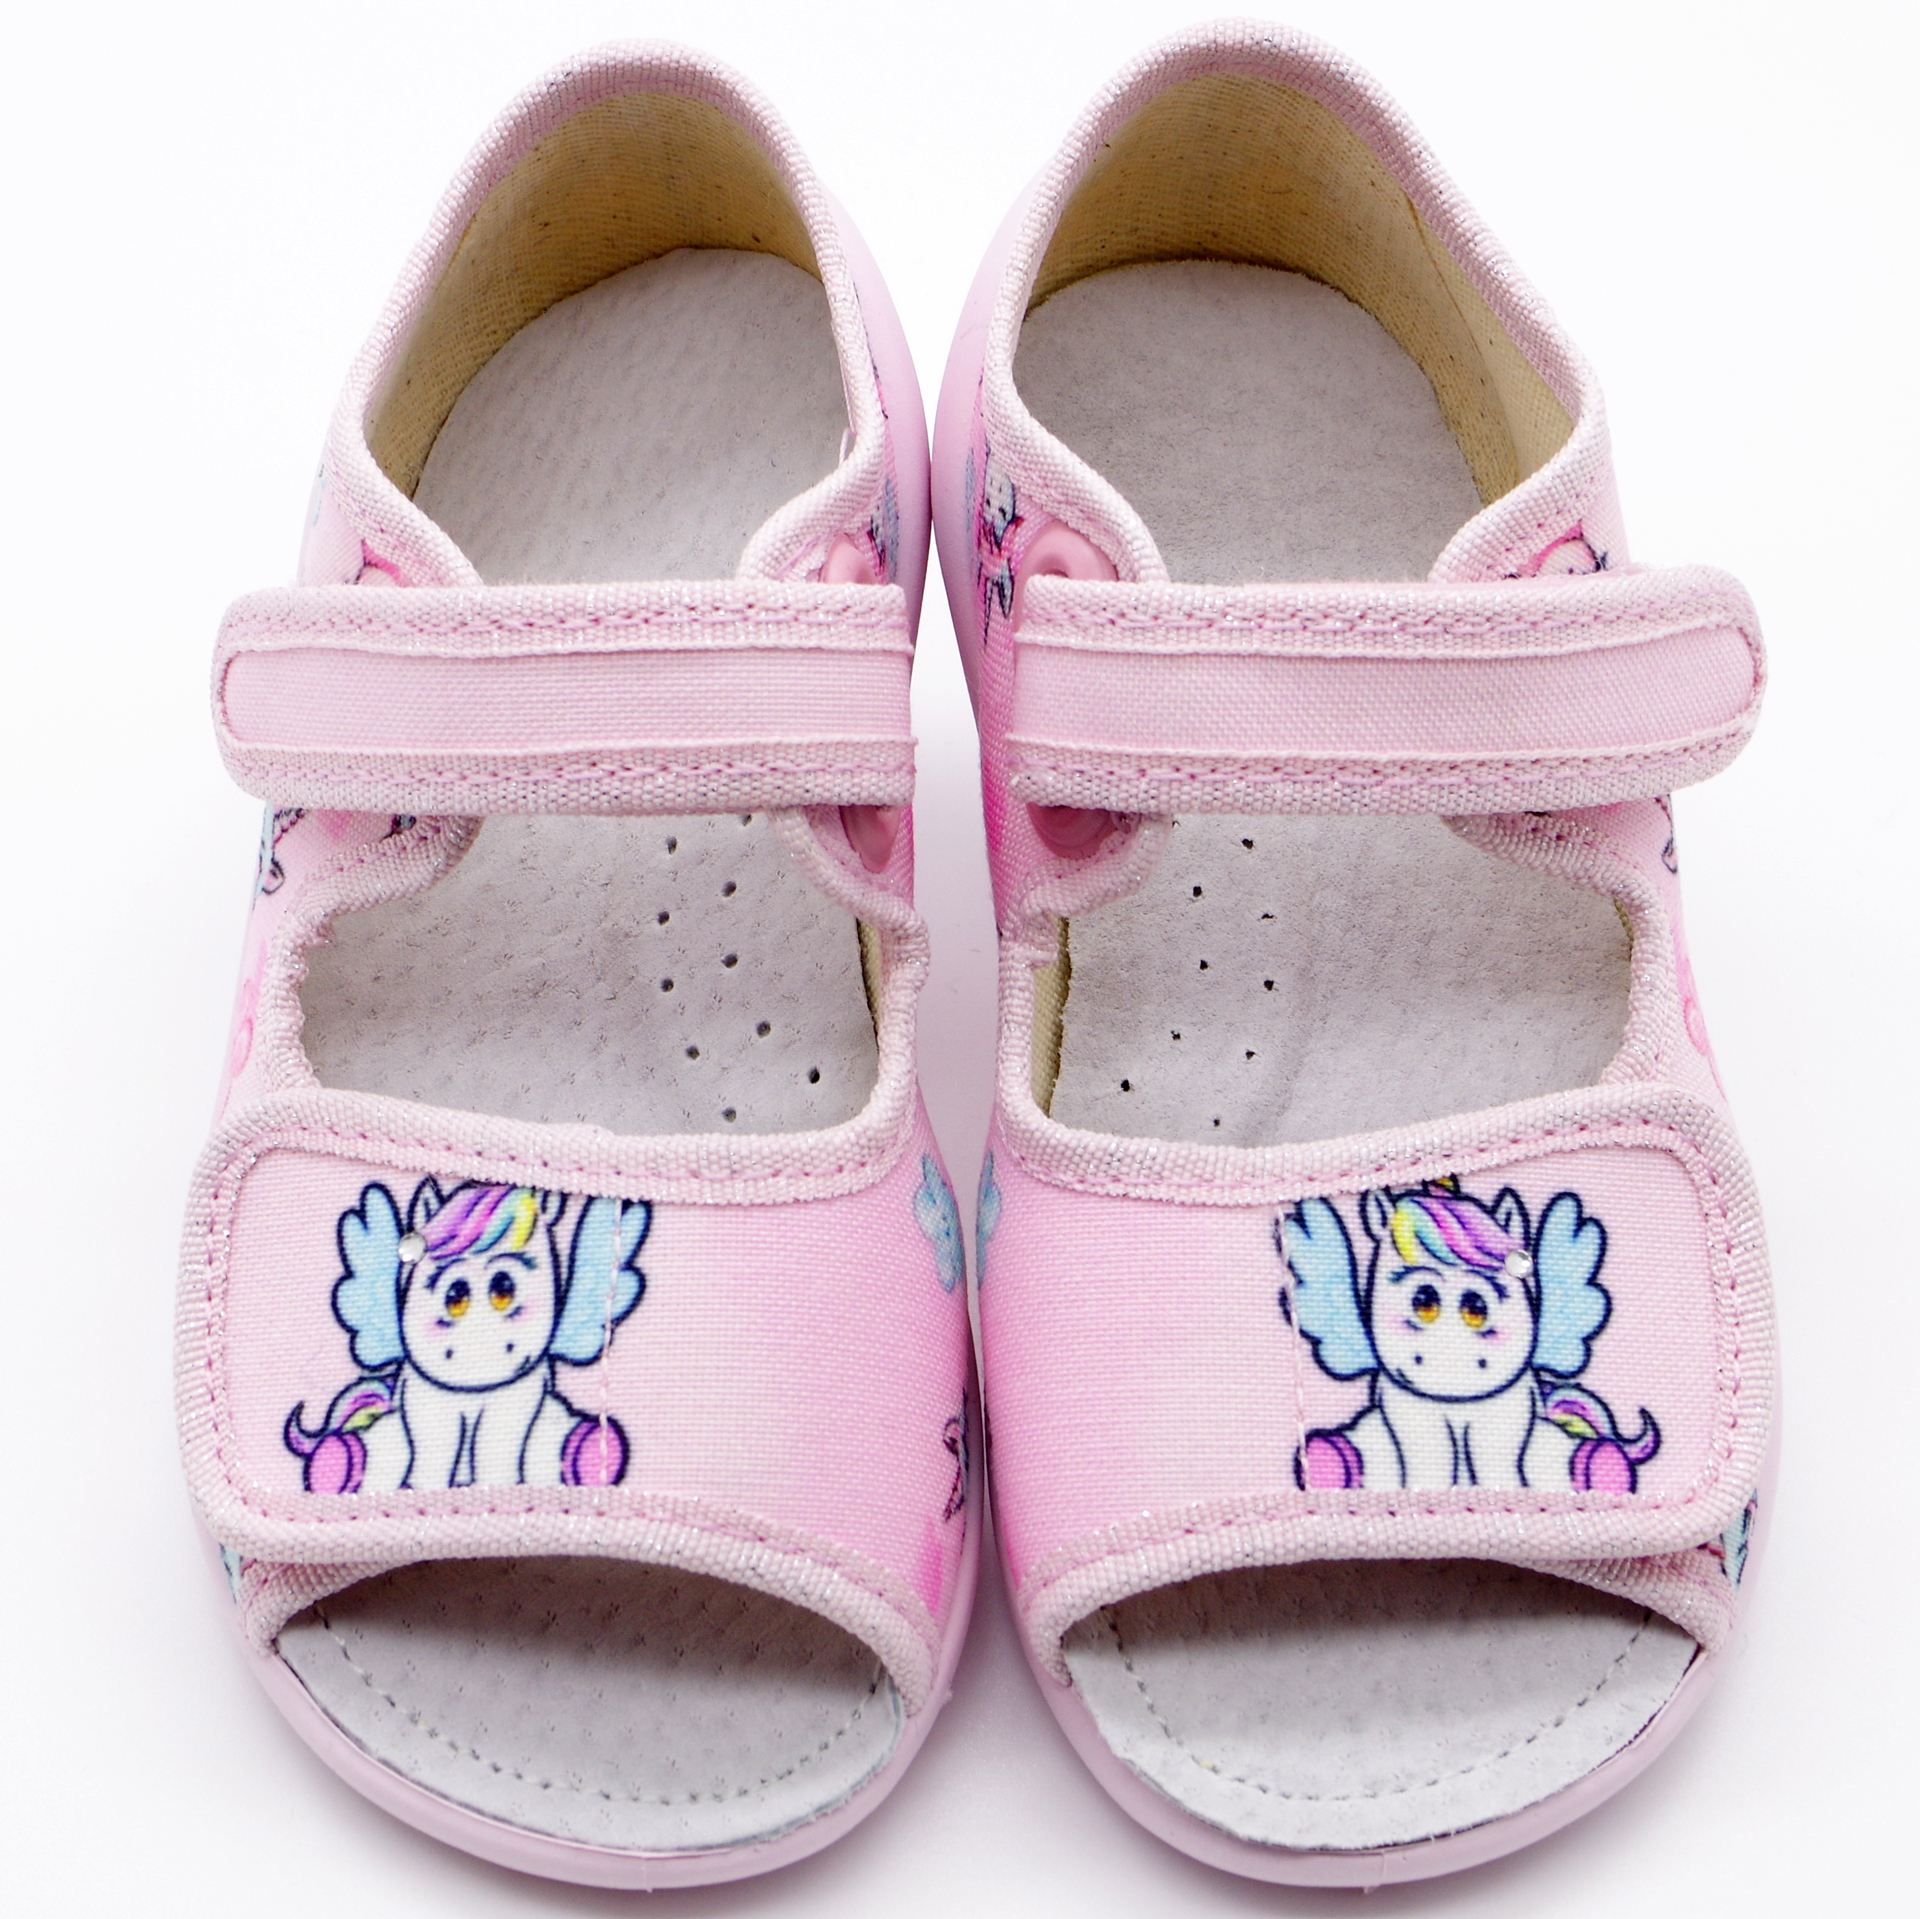 Текстильная обувь для девочек Тапочки Ева Единорог (2180) цвет Микс 23-30 размеры – Sole Kids. Фото 2